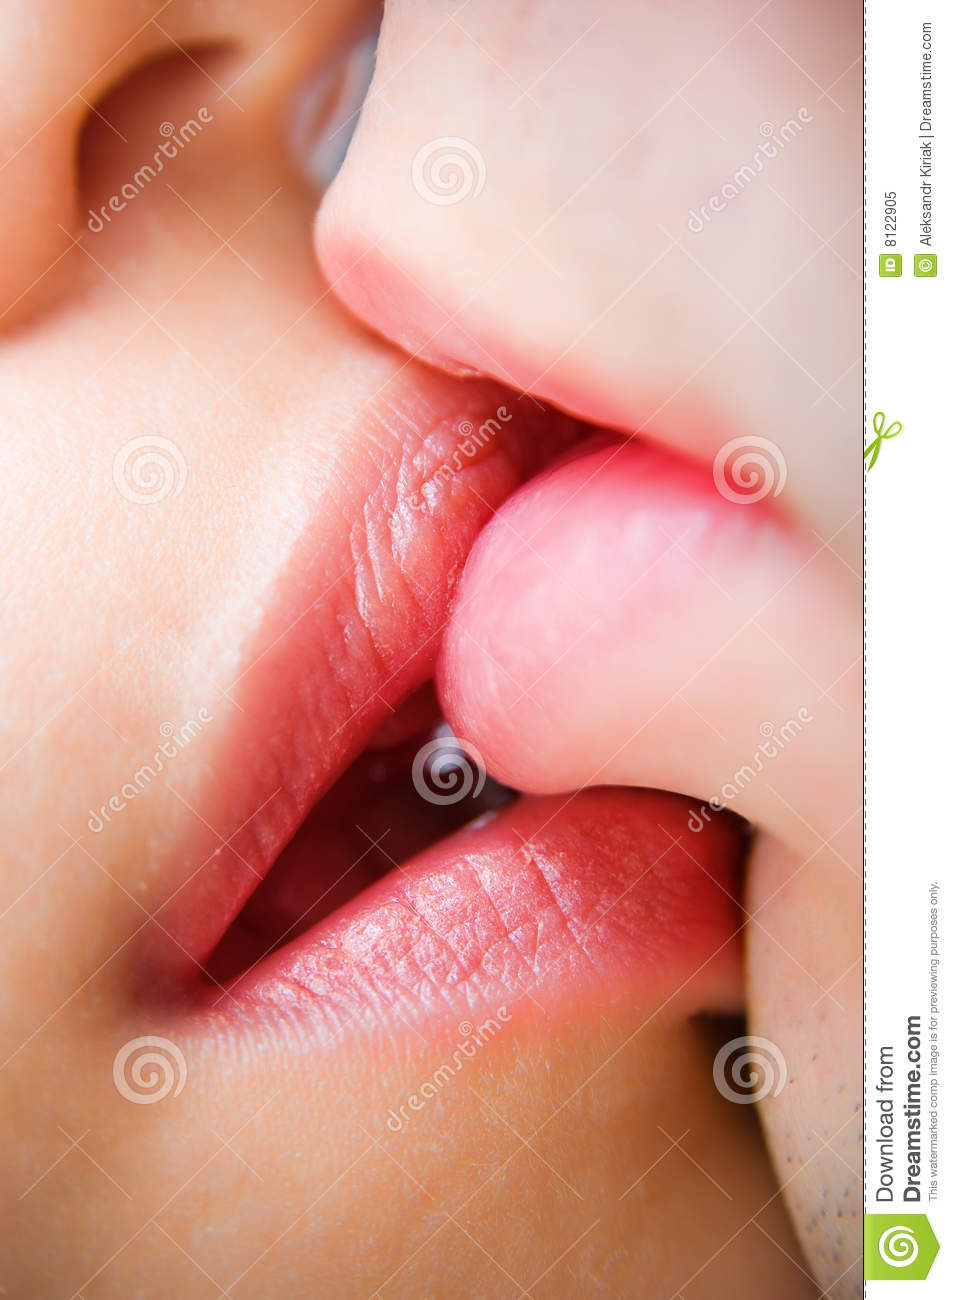 Kissing Lips Images Free - KibrisPDR